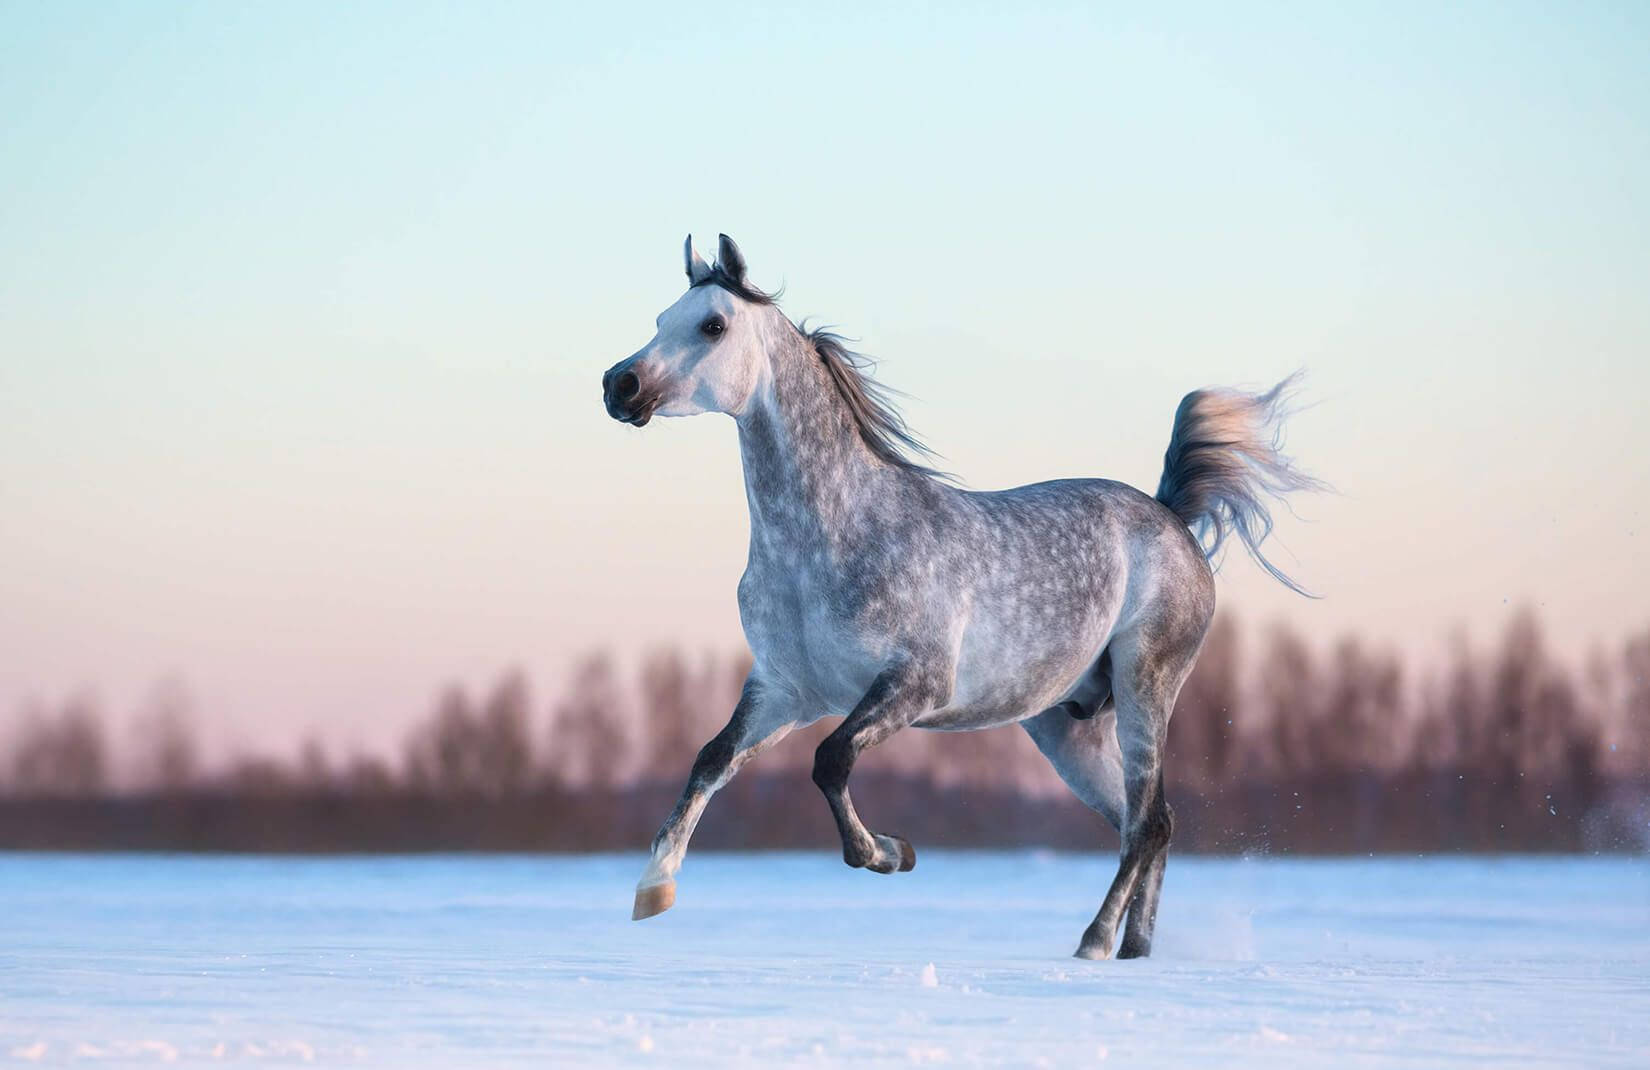 Appaloosa Horse In Winter